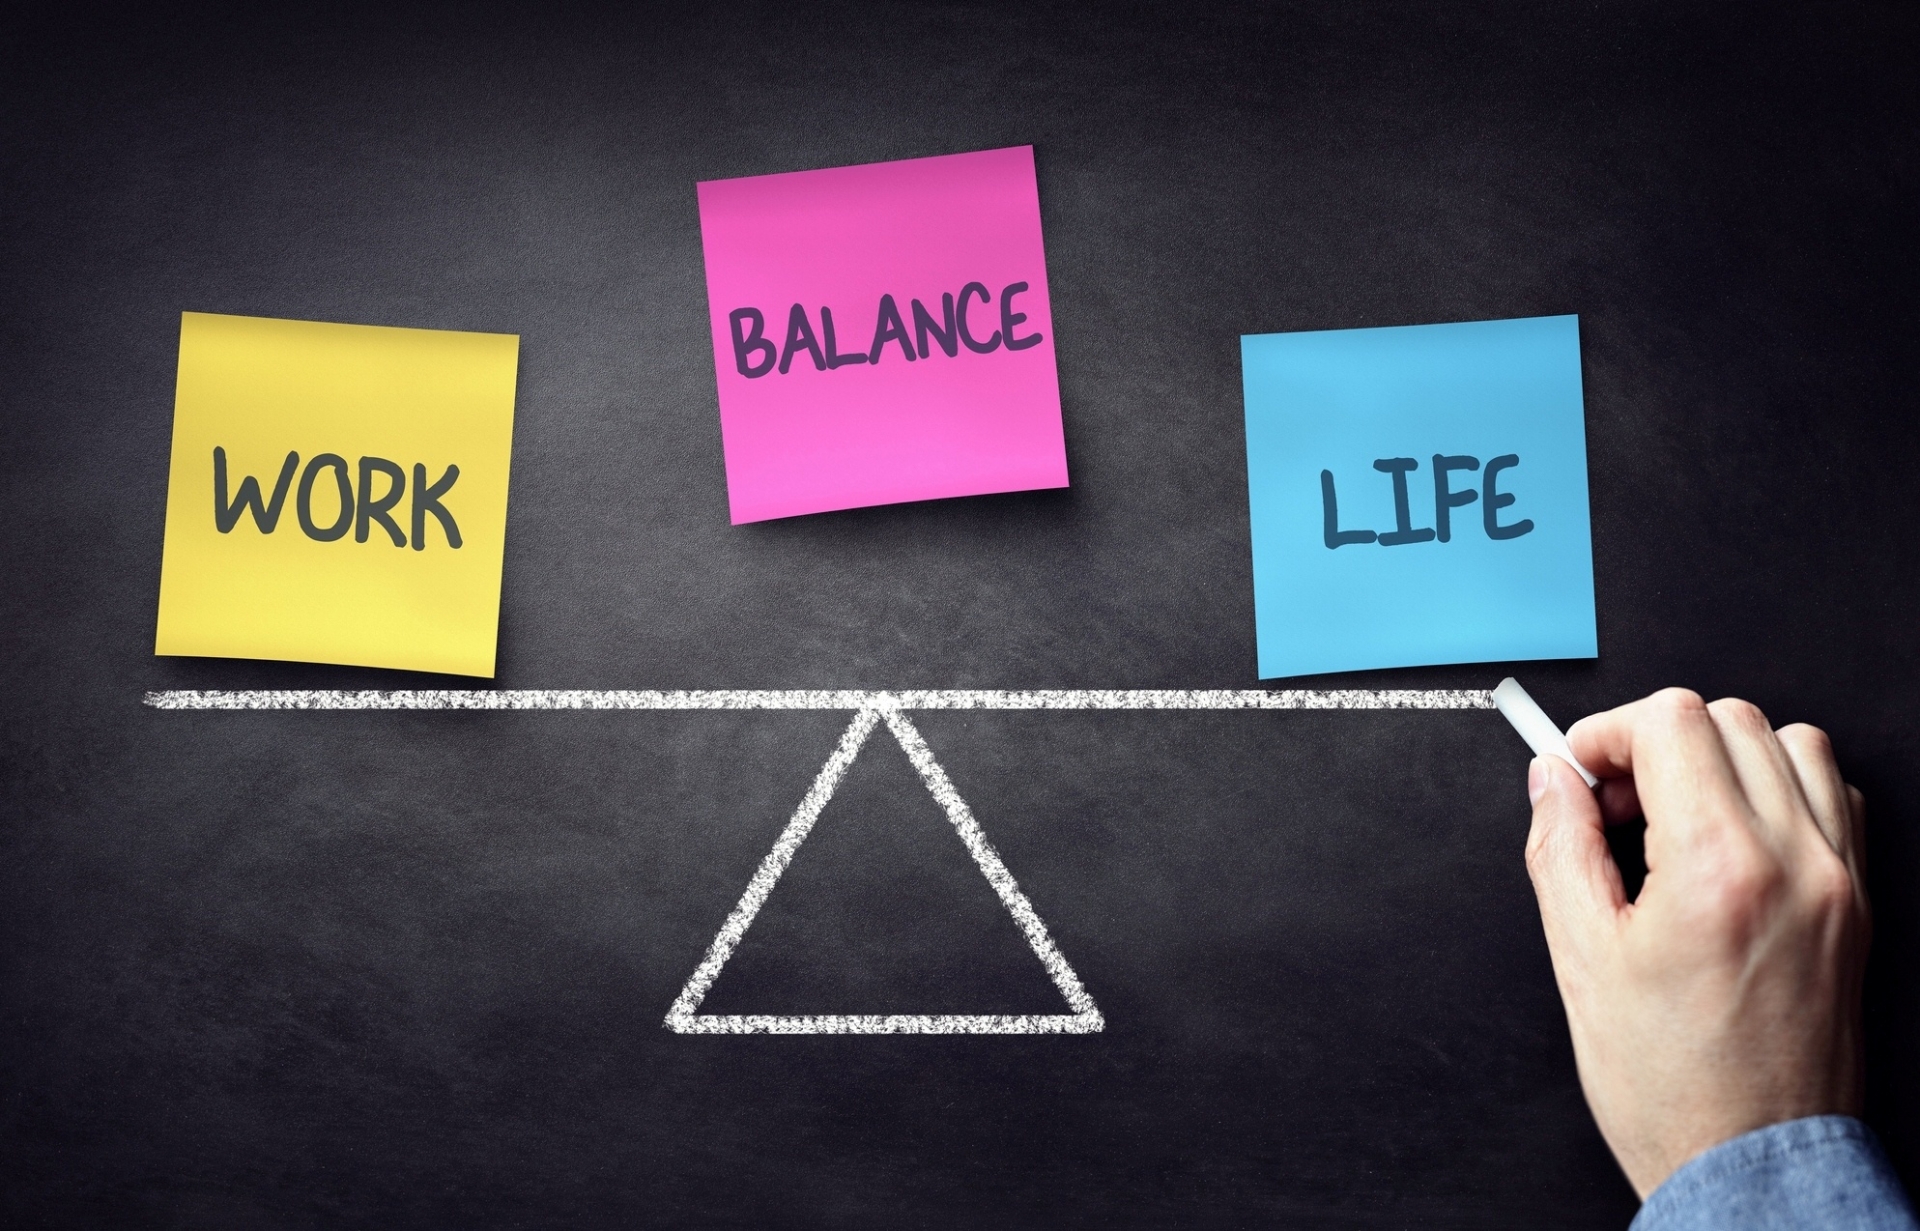 Life Learning promuove il giusto equilibrio tra lavoro e vita privata